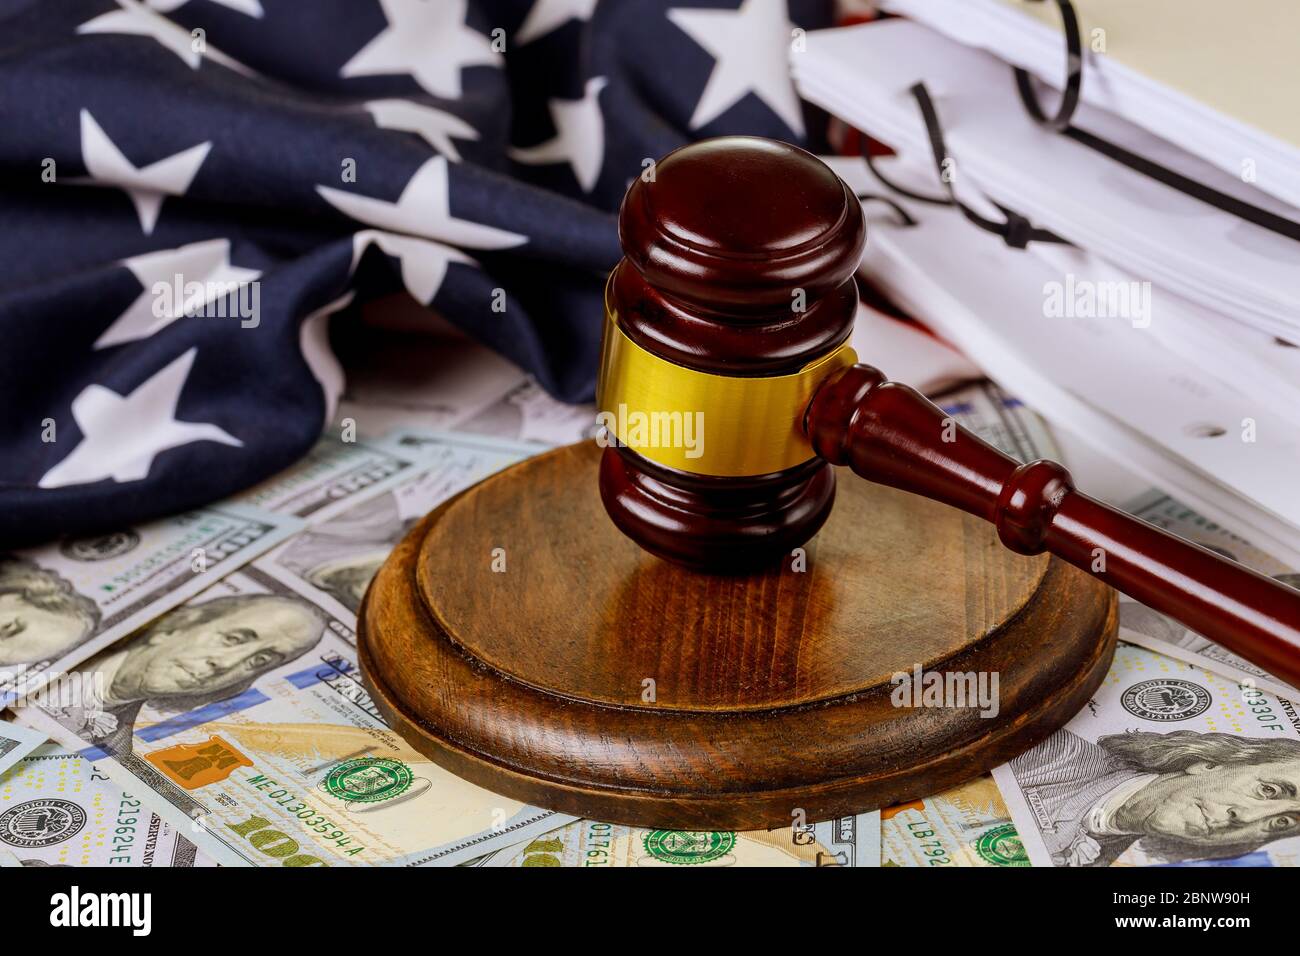 La avela del juez con la ley de la bandera de los Estados Unidos y el juez de la ley Foto de stock